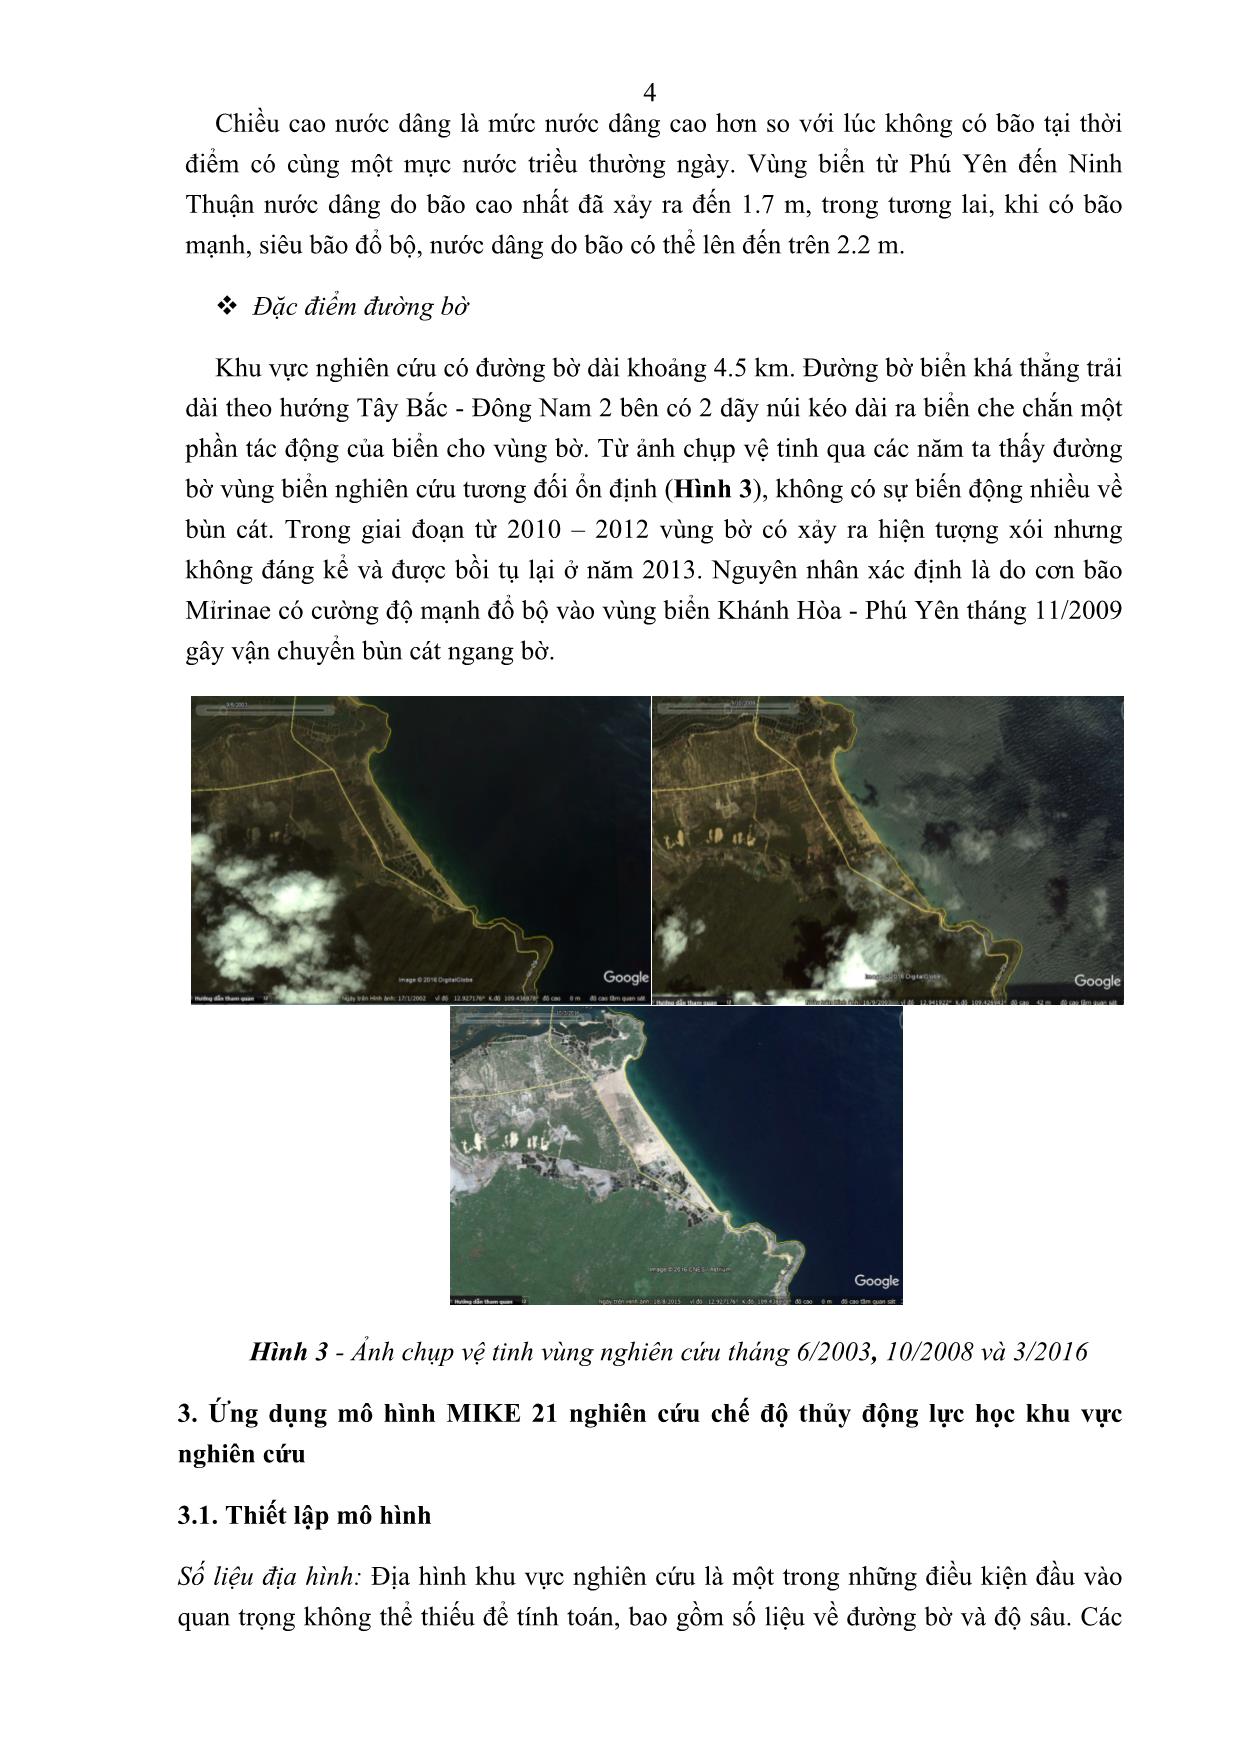 Nghiên cứu chế độ thủy động lực học khu vực bãi gốc - Phú Yên trang 4